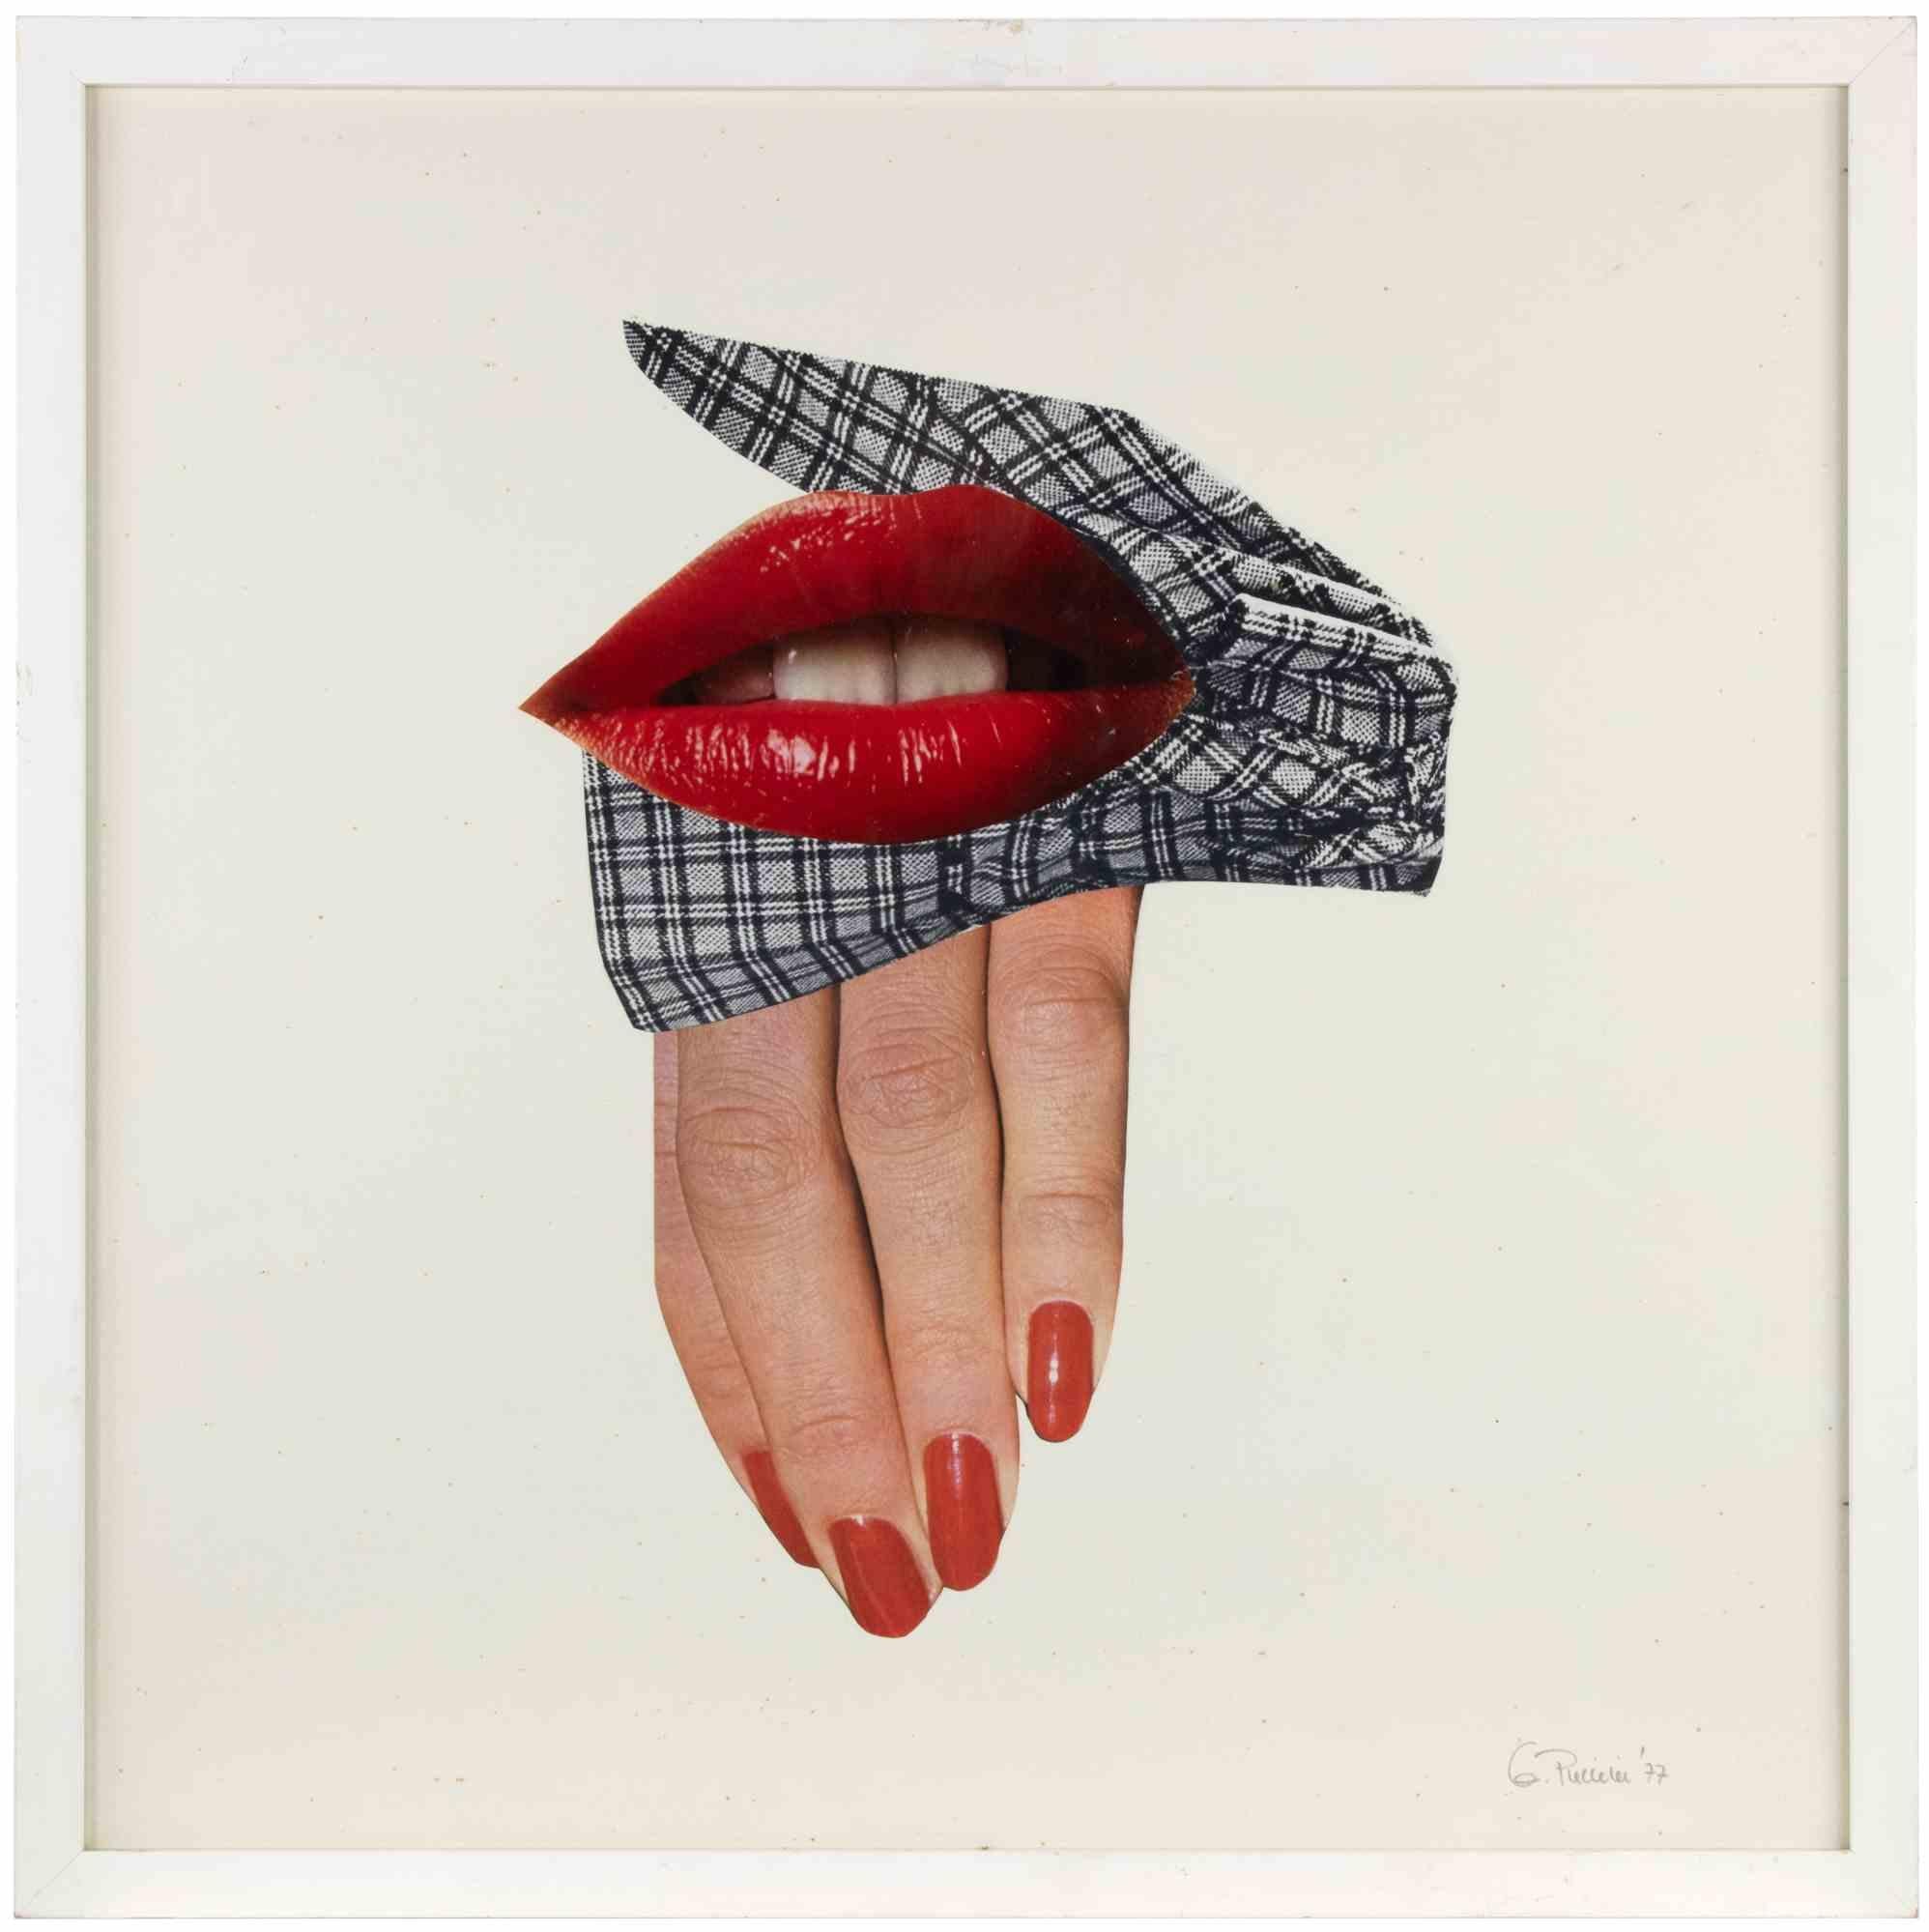 9 - White Black and Red ist ein zeitgenössisches Kunstwerk von Genny Puccini aus dem Jahr 1977. 

Gemischte Farbcollage auf Papier.

Handsigniert und datiert am unteren rechten Rand.





